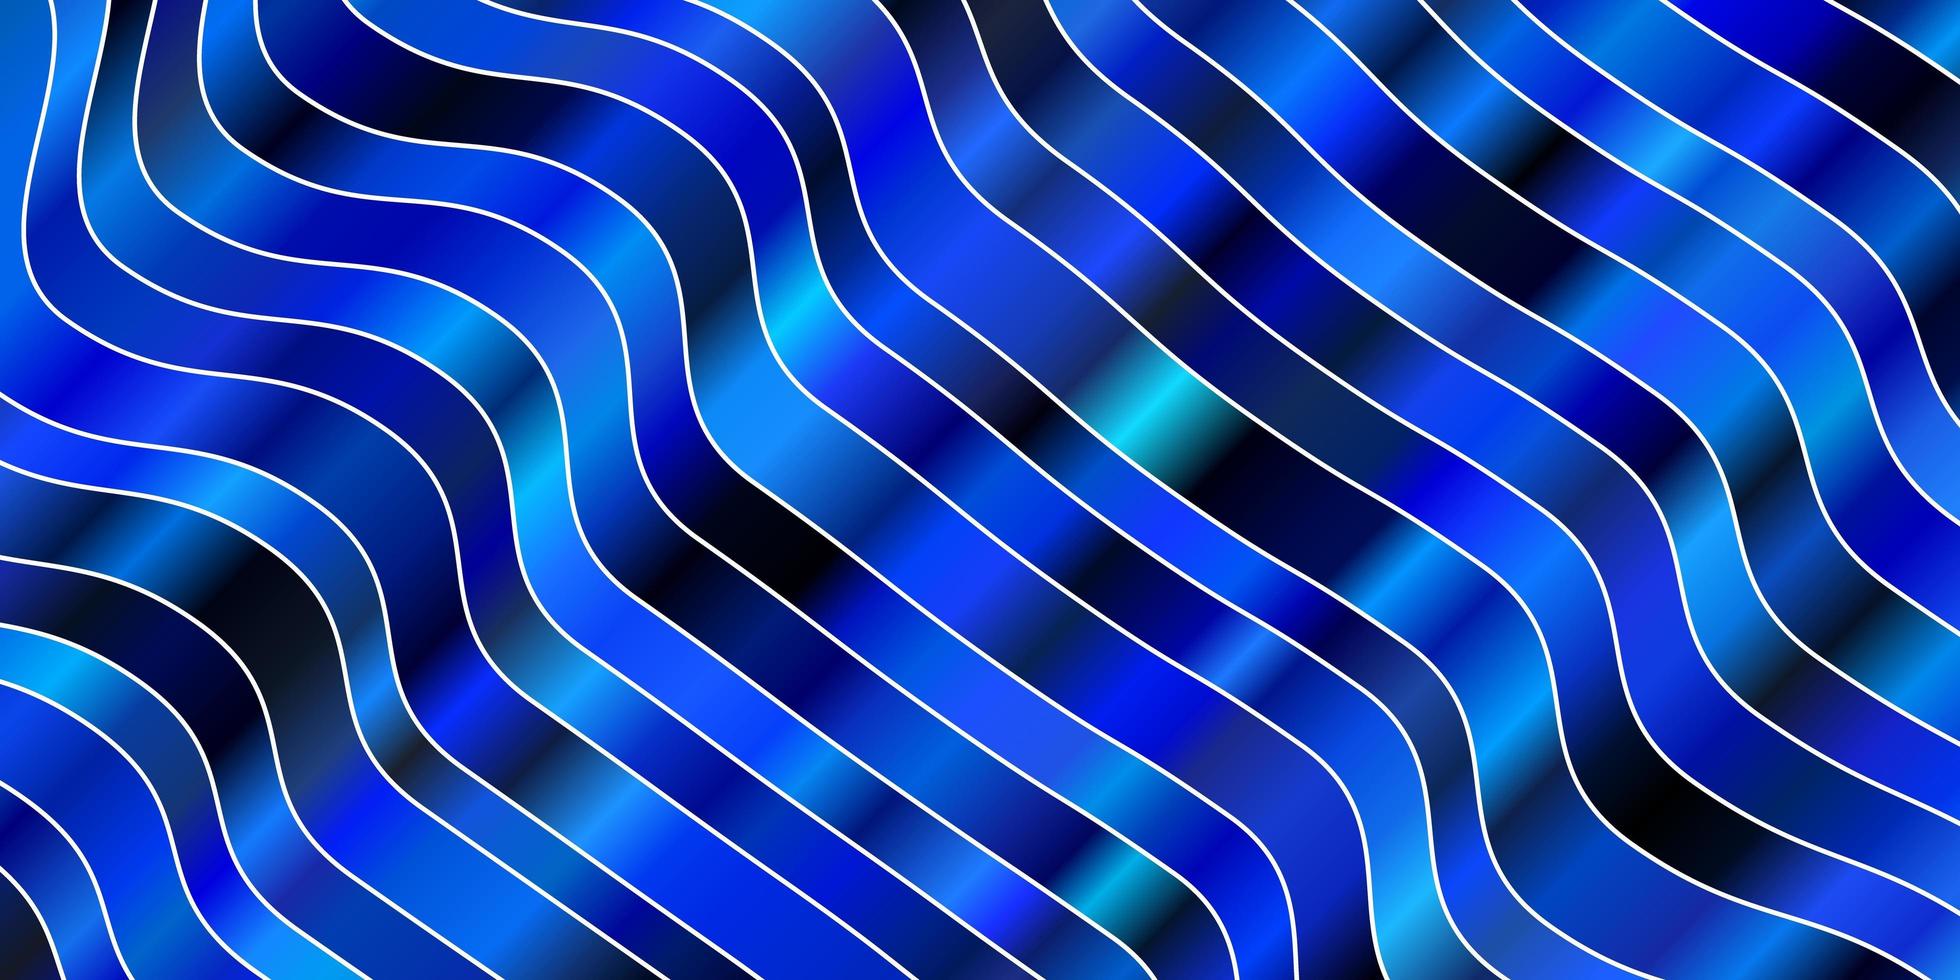 toile de fond de vecteur bleu clair avec des courbes illustration abstraite avec motif de lignes de dégradé bandy pour les publicités publicitaires